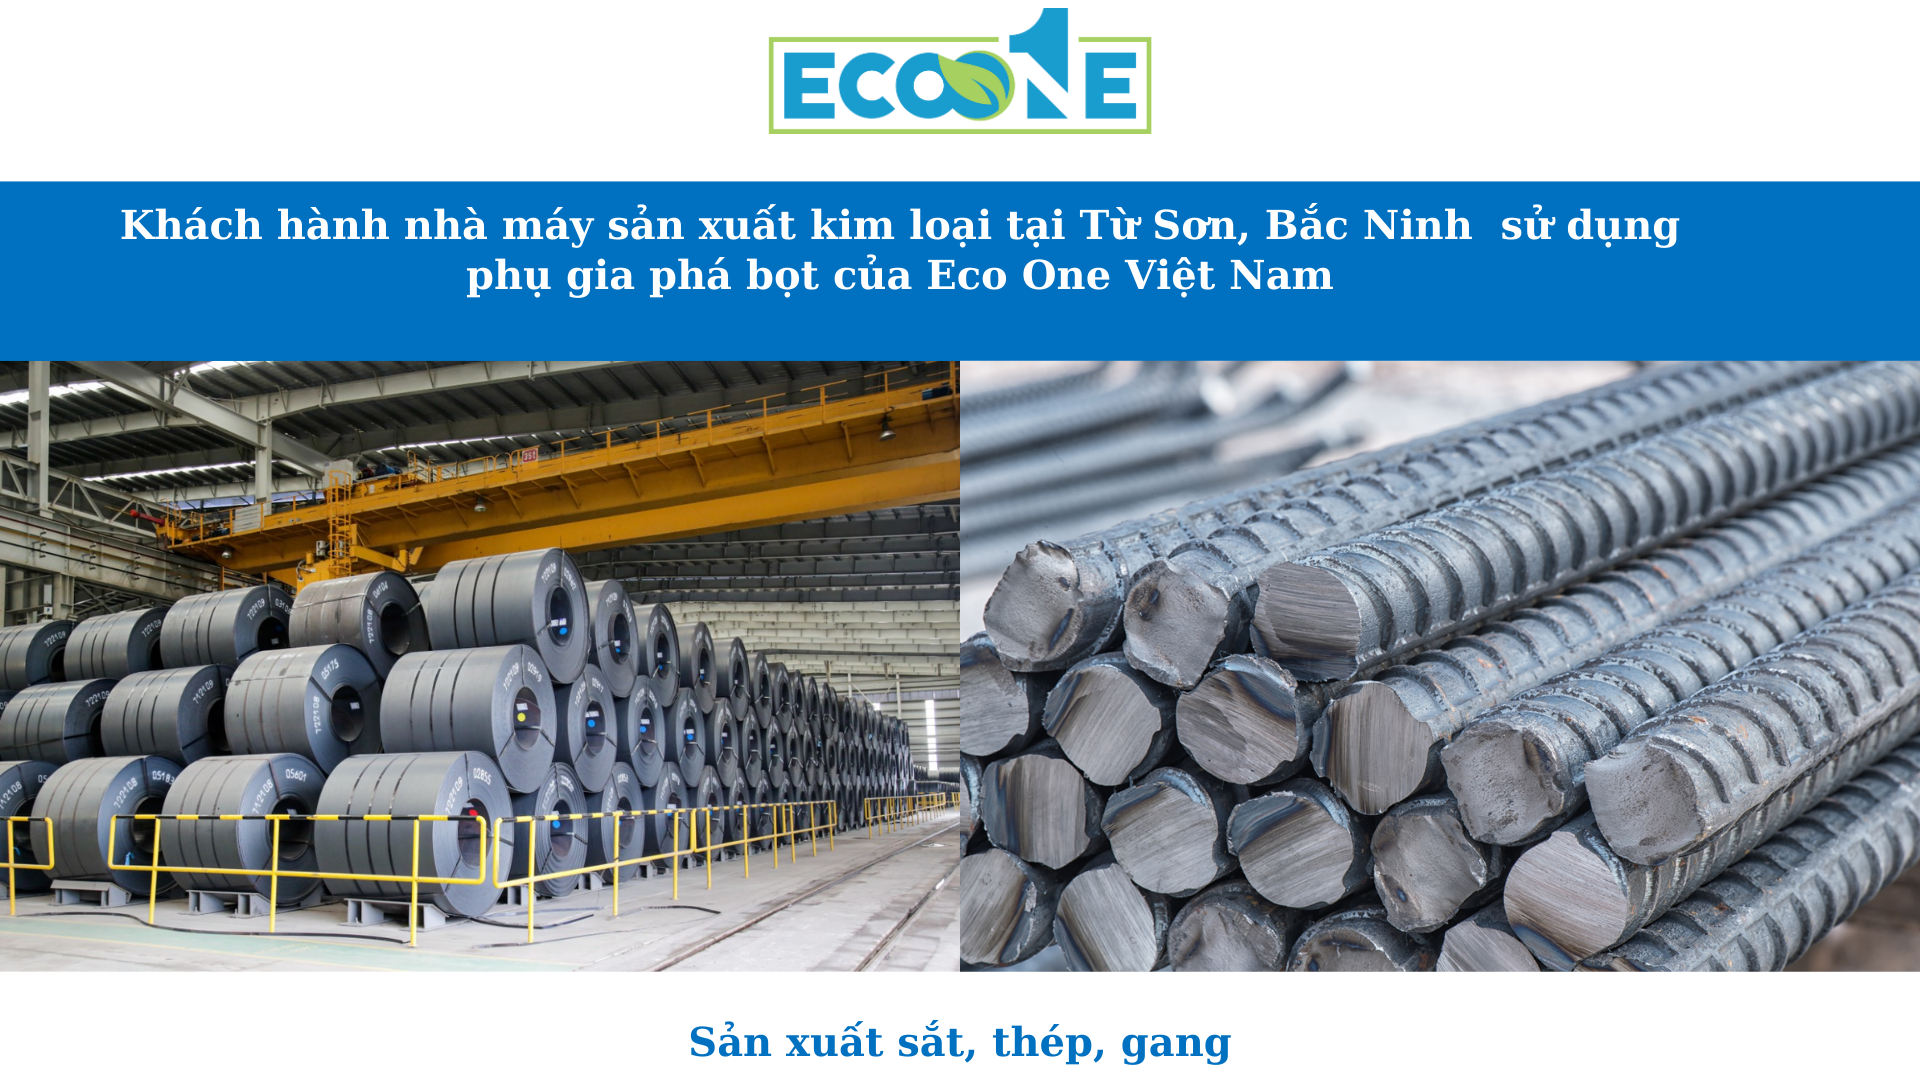 Khách hành nhà máy sản xuất kim loại tại Từ Sơn, Bắc Ninh sử dụng phụ gia phá bọt của Eco One Việt Nam